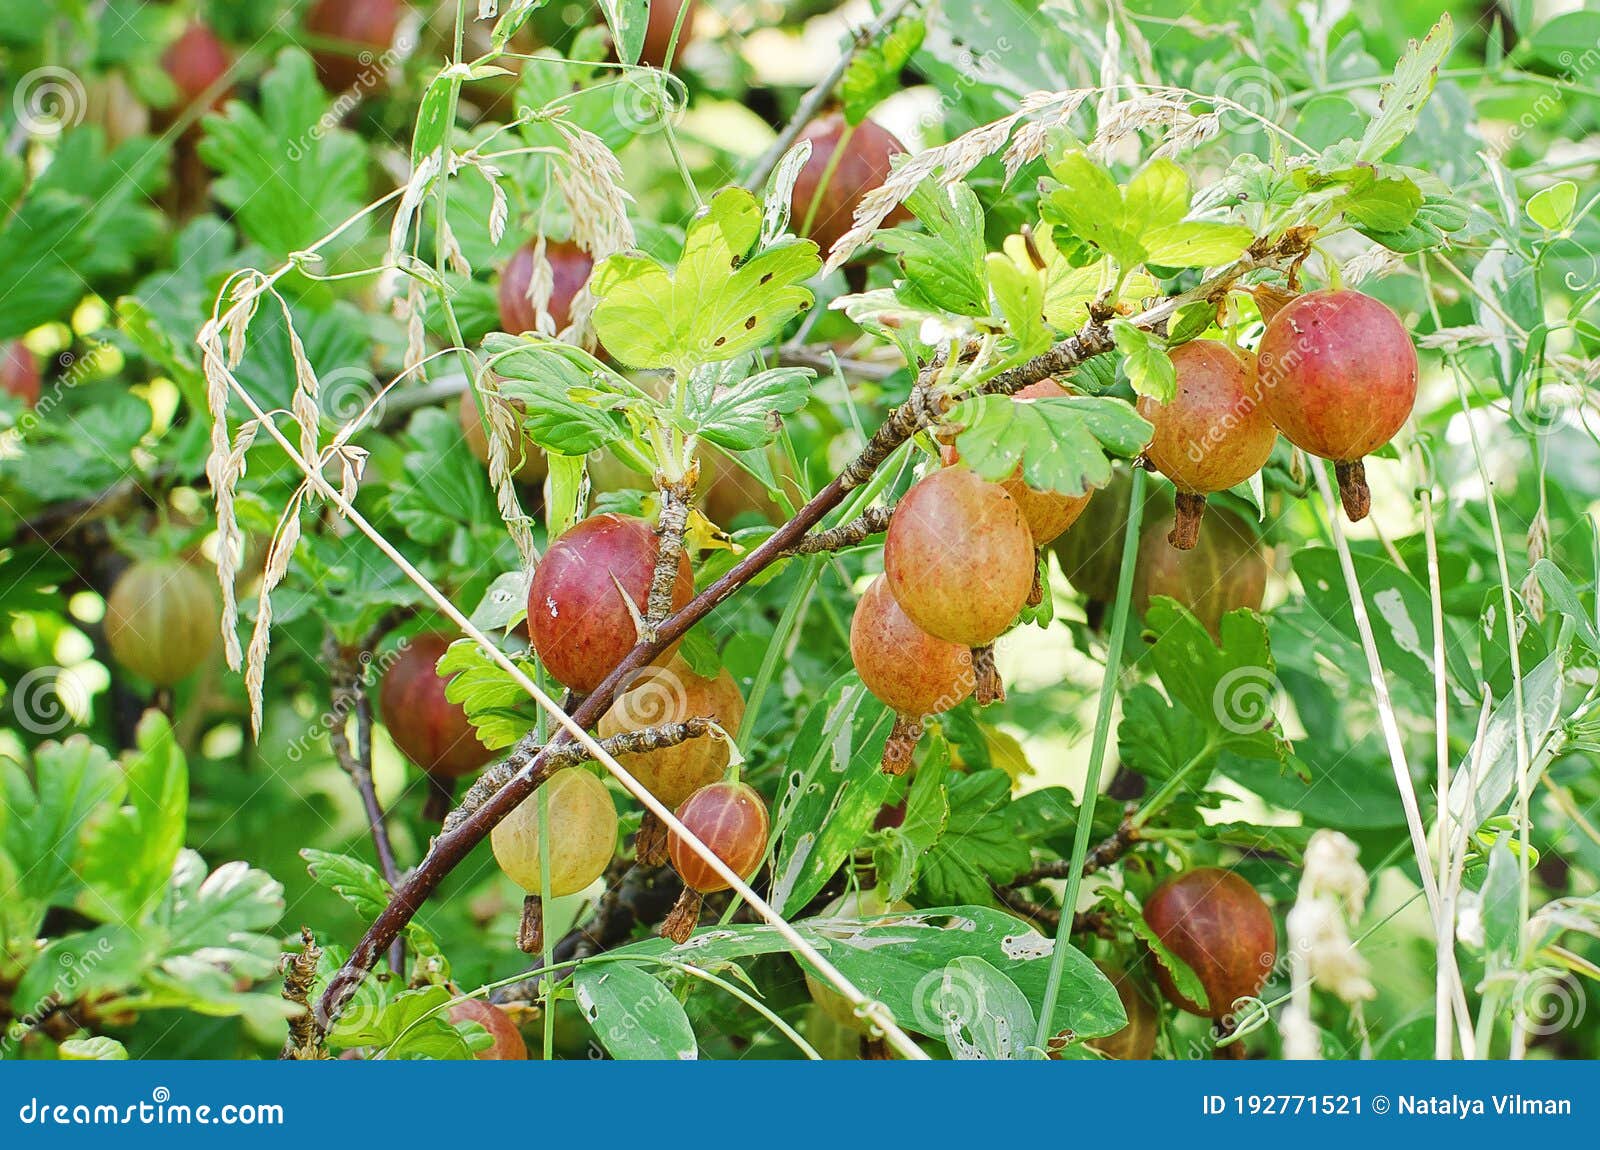 白色背景中的鹅莓印度鹅莓 库存图片. 图片 包括有 叶子, 成熟, 结构树, 印第安语, 食物, 水多 - 221541157